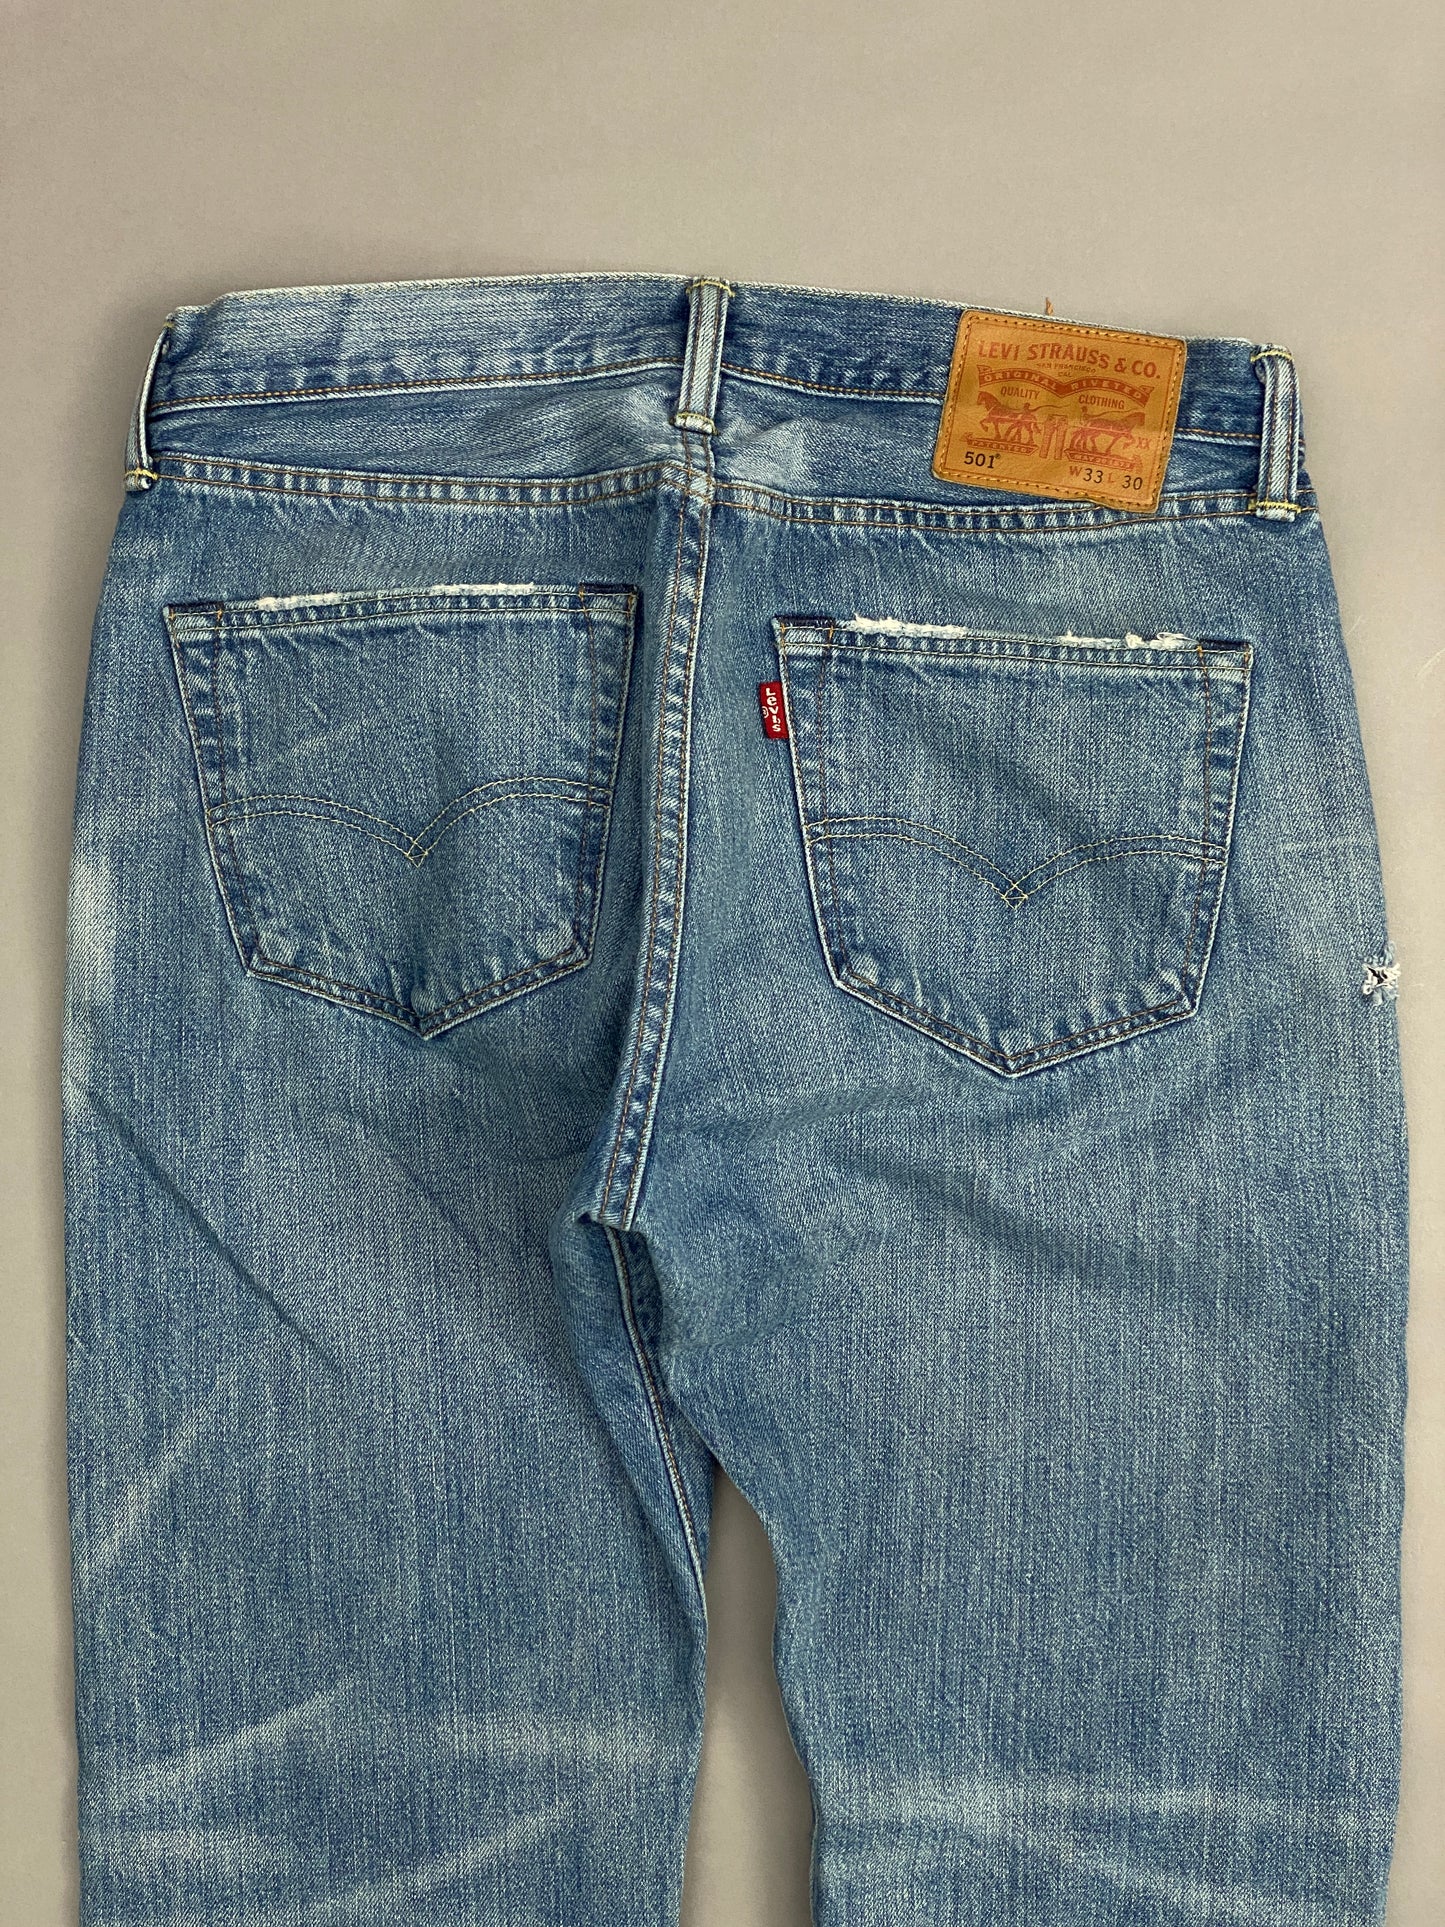 Levis 501 Jeans - 33x30